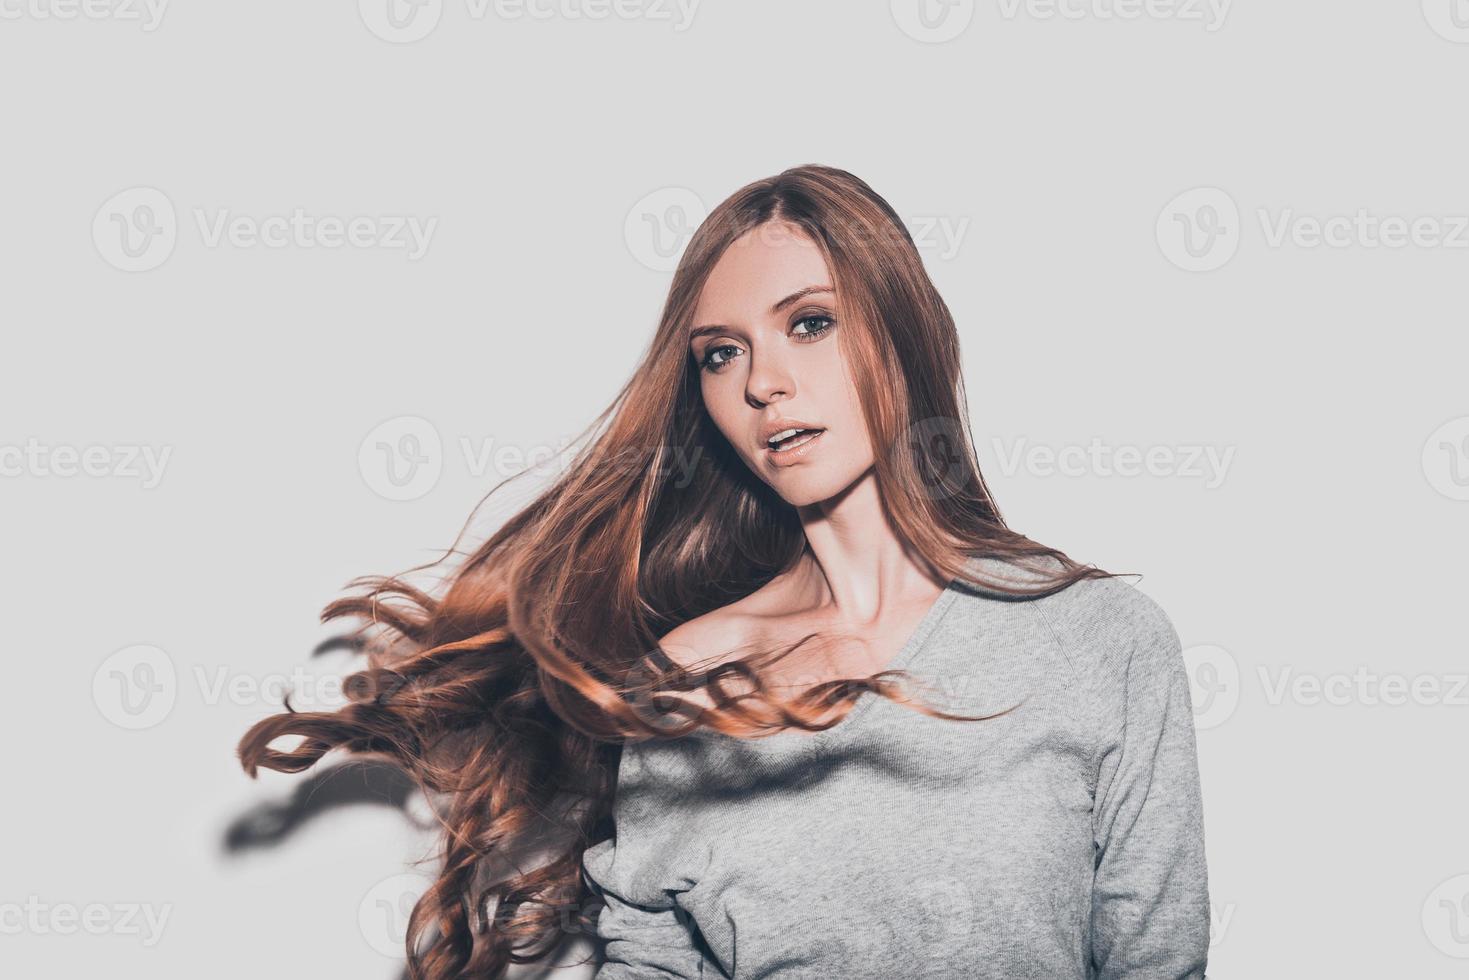 cabelo em movimento. retrato de mulher jovem e atraente com cabelo despenteado, olhando para a câmera em pé contra um fundo cinza foto